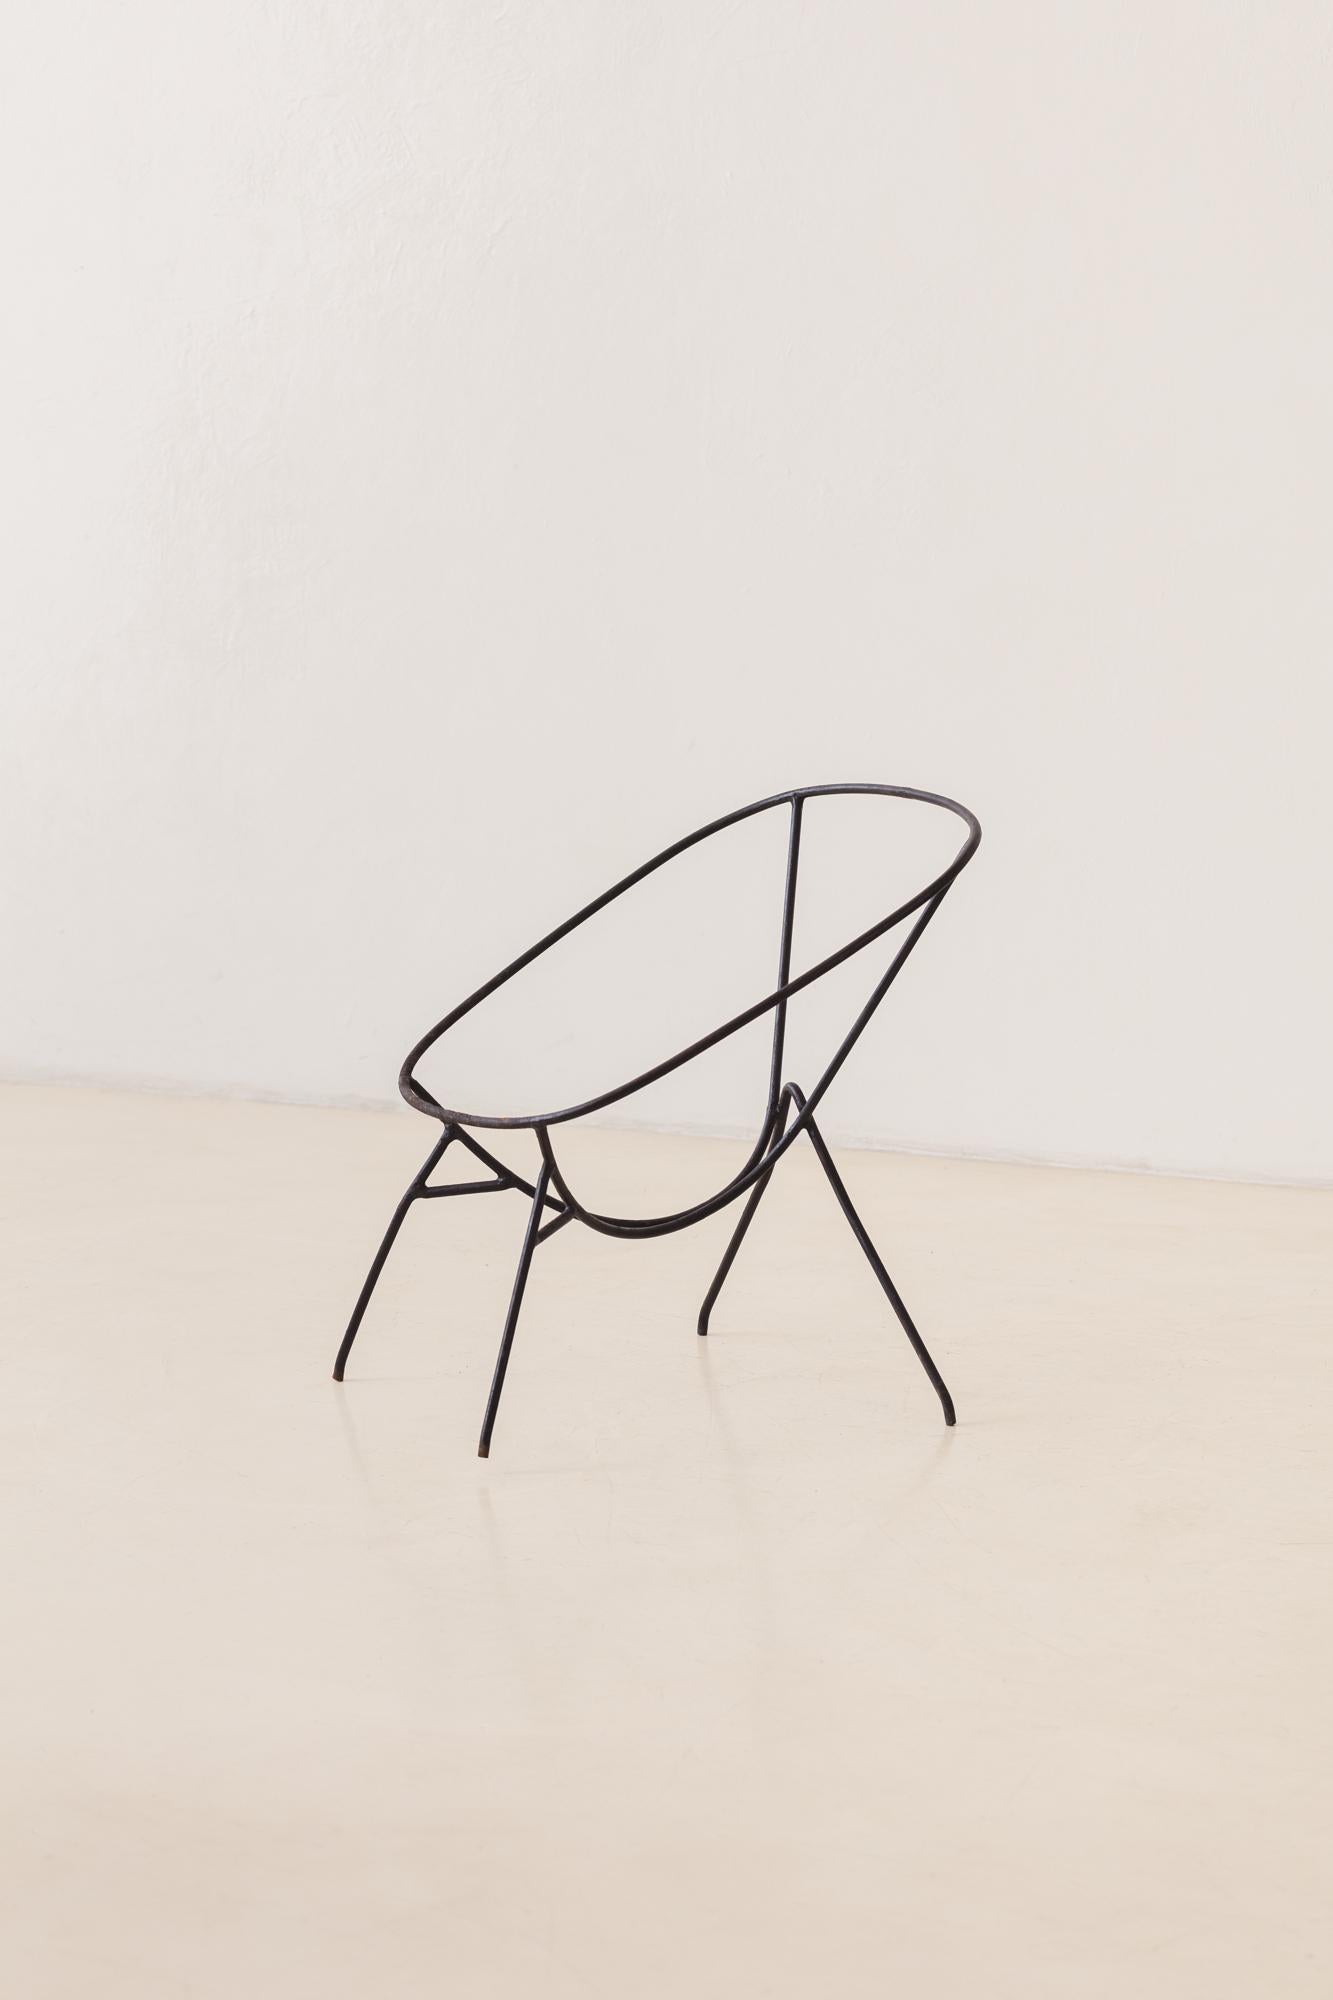 Ce fauteuil s'inspire librement de l'une des pièces les plus emblématiques conçues par Martin Eisler (1913-1977) et produites par Móveis Artesanal et Forma S.A. Móveis e Objetos de Arte dans les années 1950.

Le design original figurait sur la